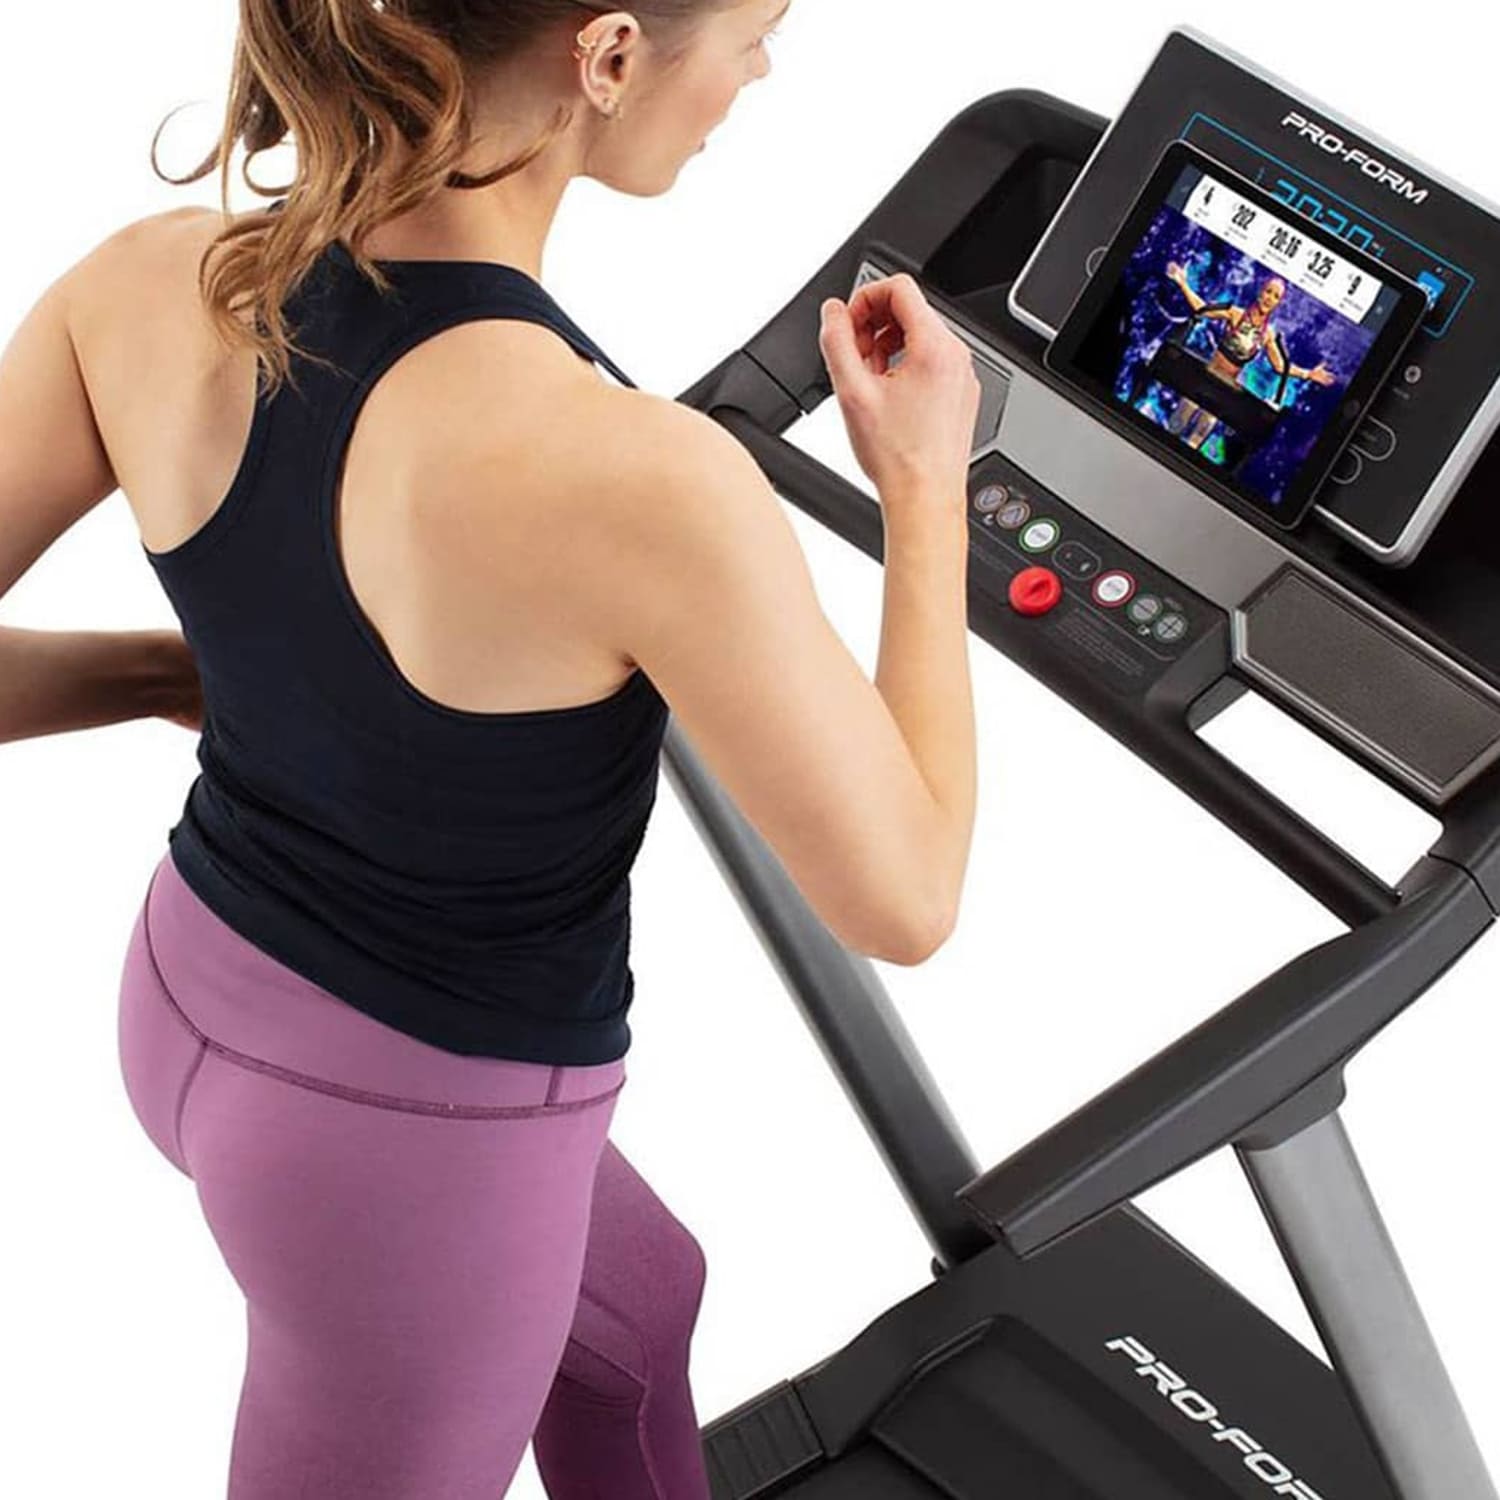 Proform Sport 3.0 Treadmill, IFIT, iPod